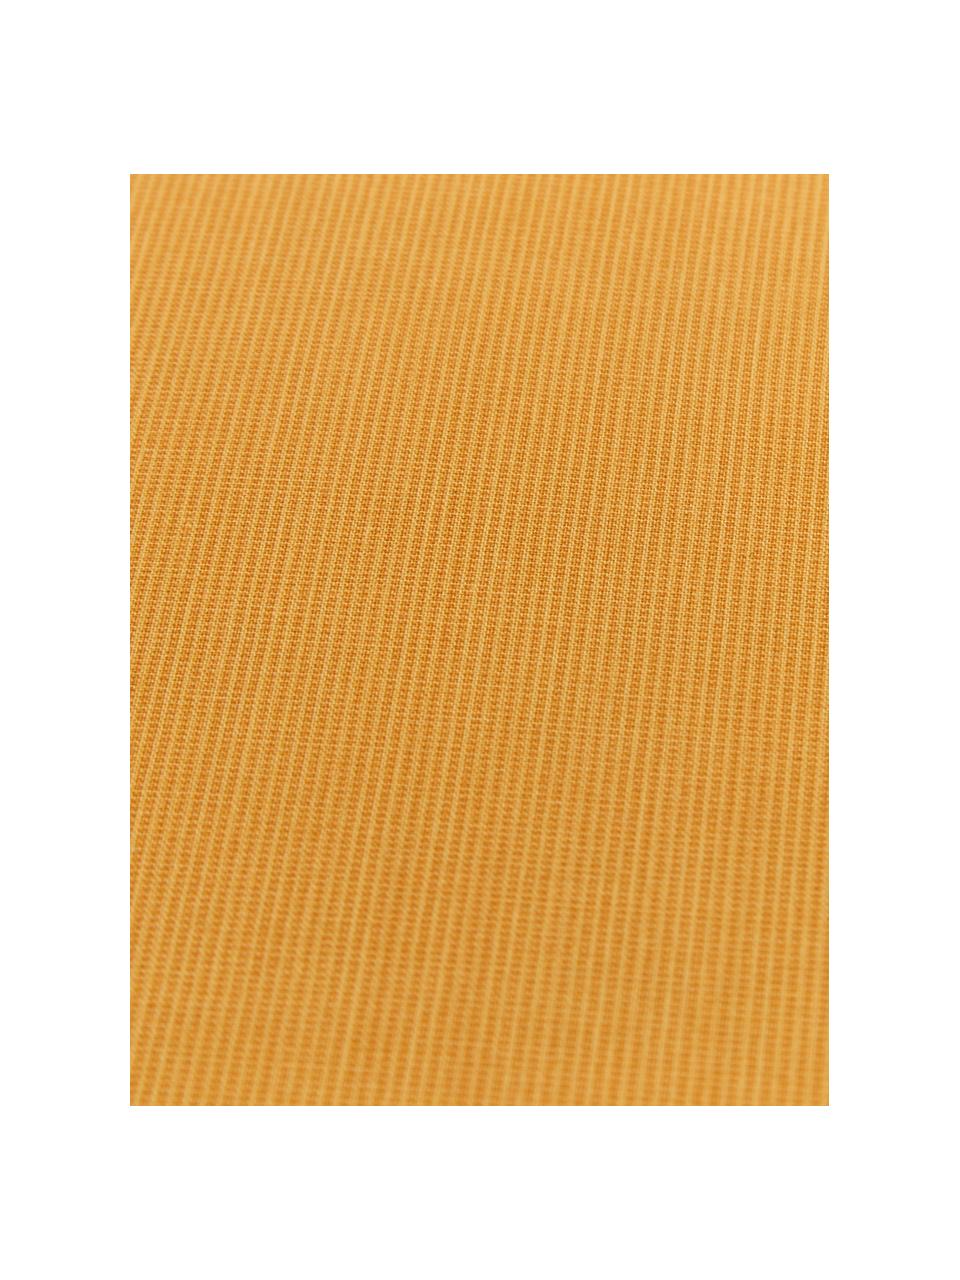 Renforcé dekbedovertrek Soft Structure met zeer fijn patroon, Weeftechniek: renforcé, Okergeel, 240 x 220 cm